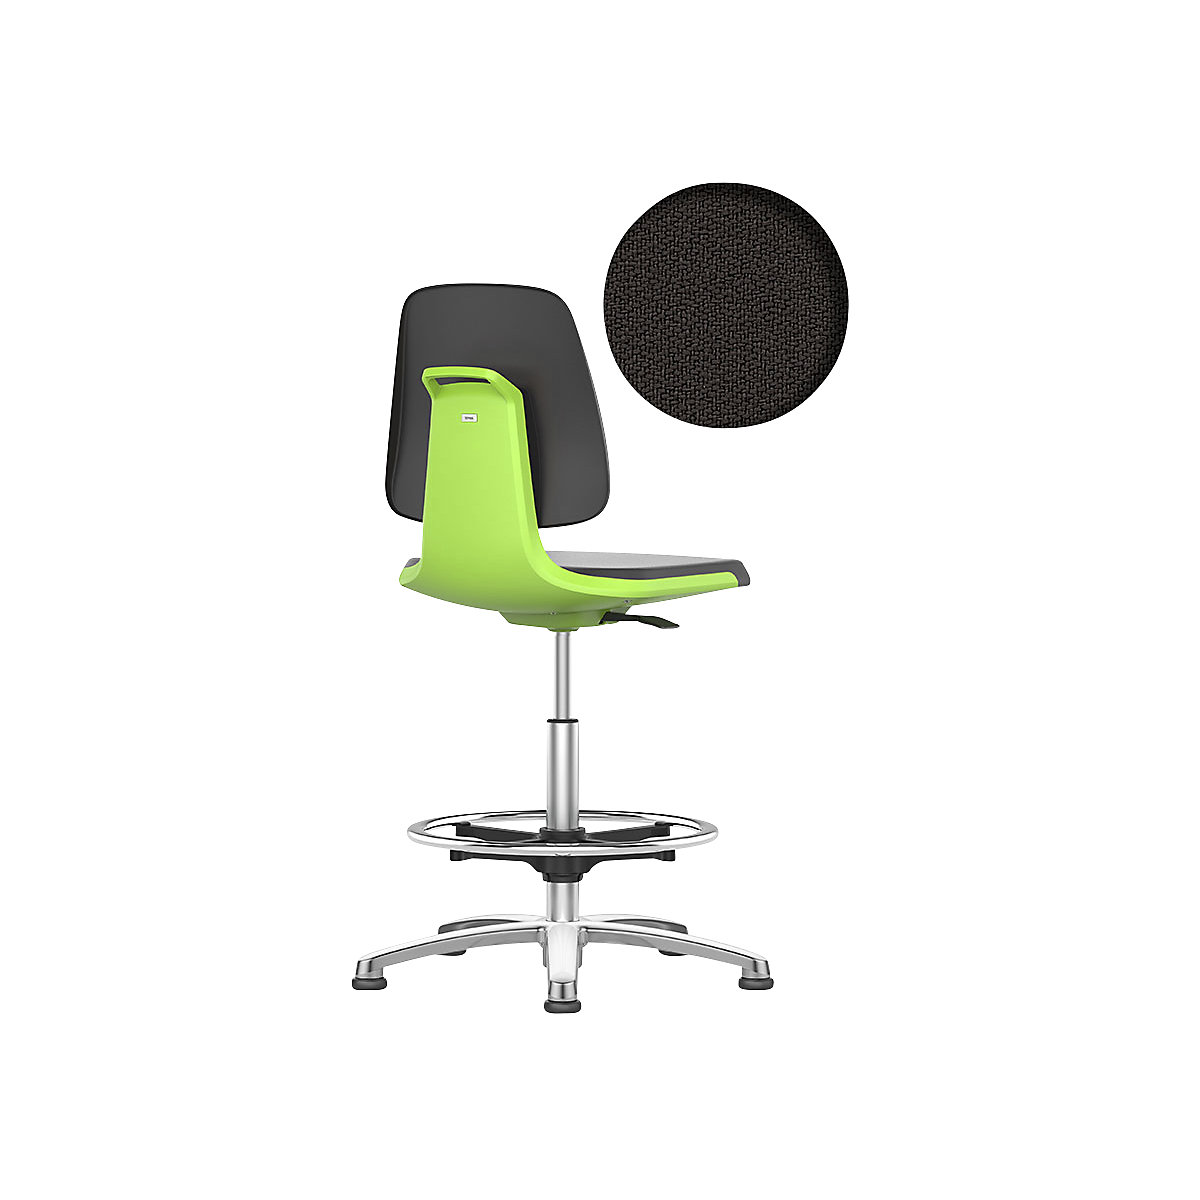 Radna okretna stolica LABSIT – bimos, s podnim vodilicama i nožnim obručem, sjedalo s presvlakom od tkanine, u zelenoj boji-18